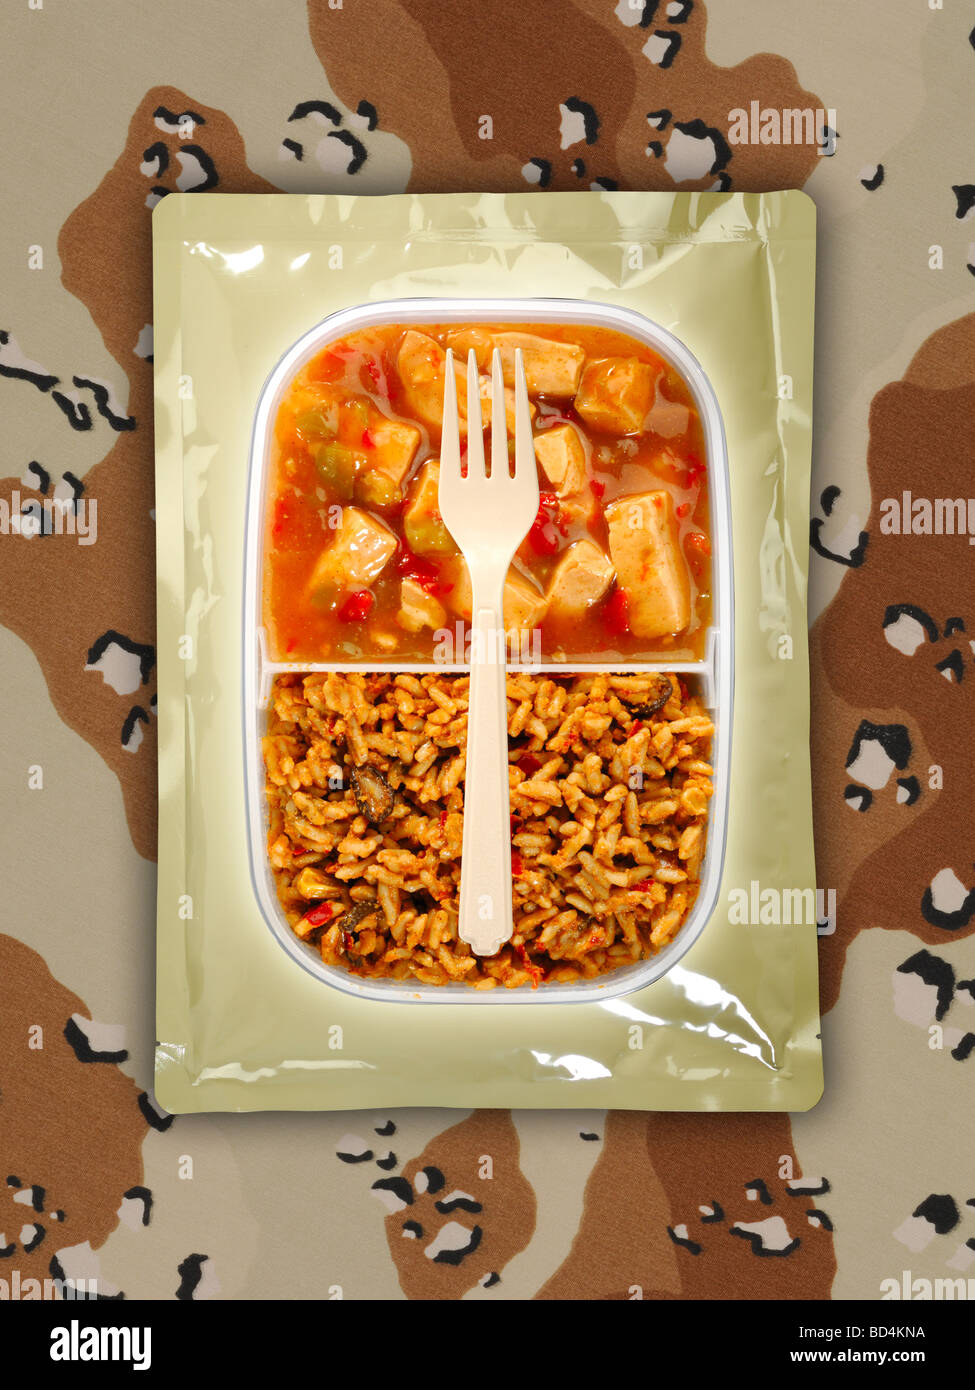 Un militare di razione di cibo pacchetto con una forcella su uno sfondo di tan camouflage, piccante di pollo con riso fritto Foto Stock